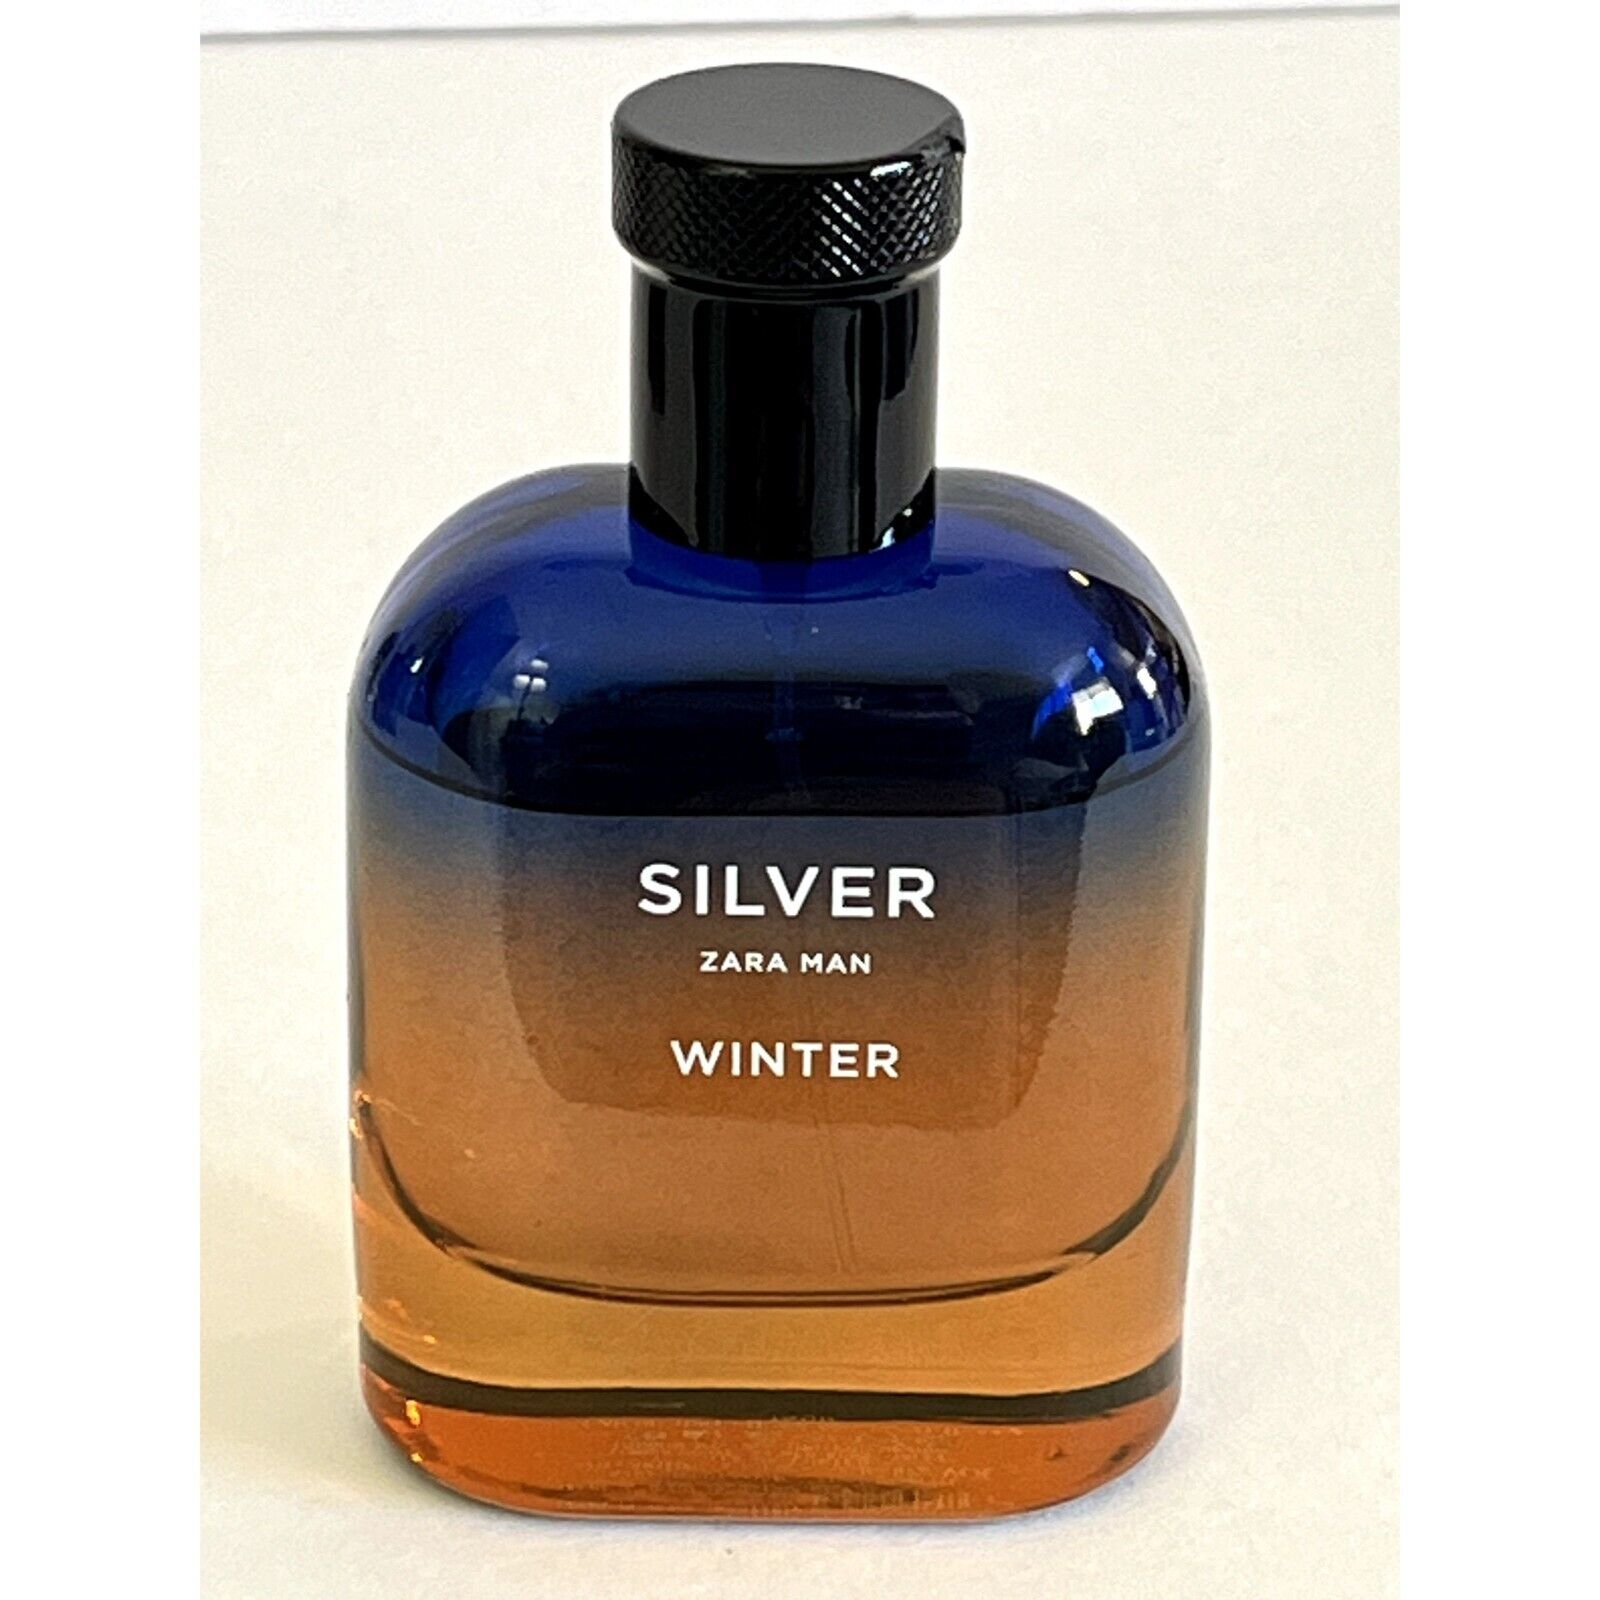 Zara Silver Winter Man Eau De Toilette Cologne About 80% full in 2.71oz Bottle R